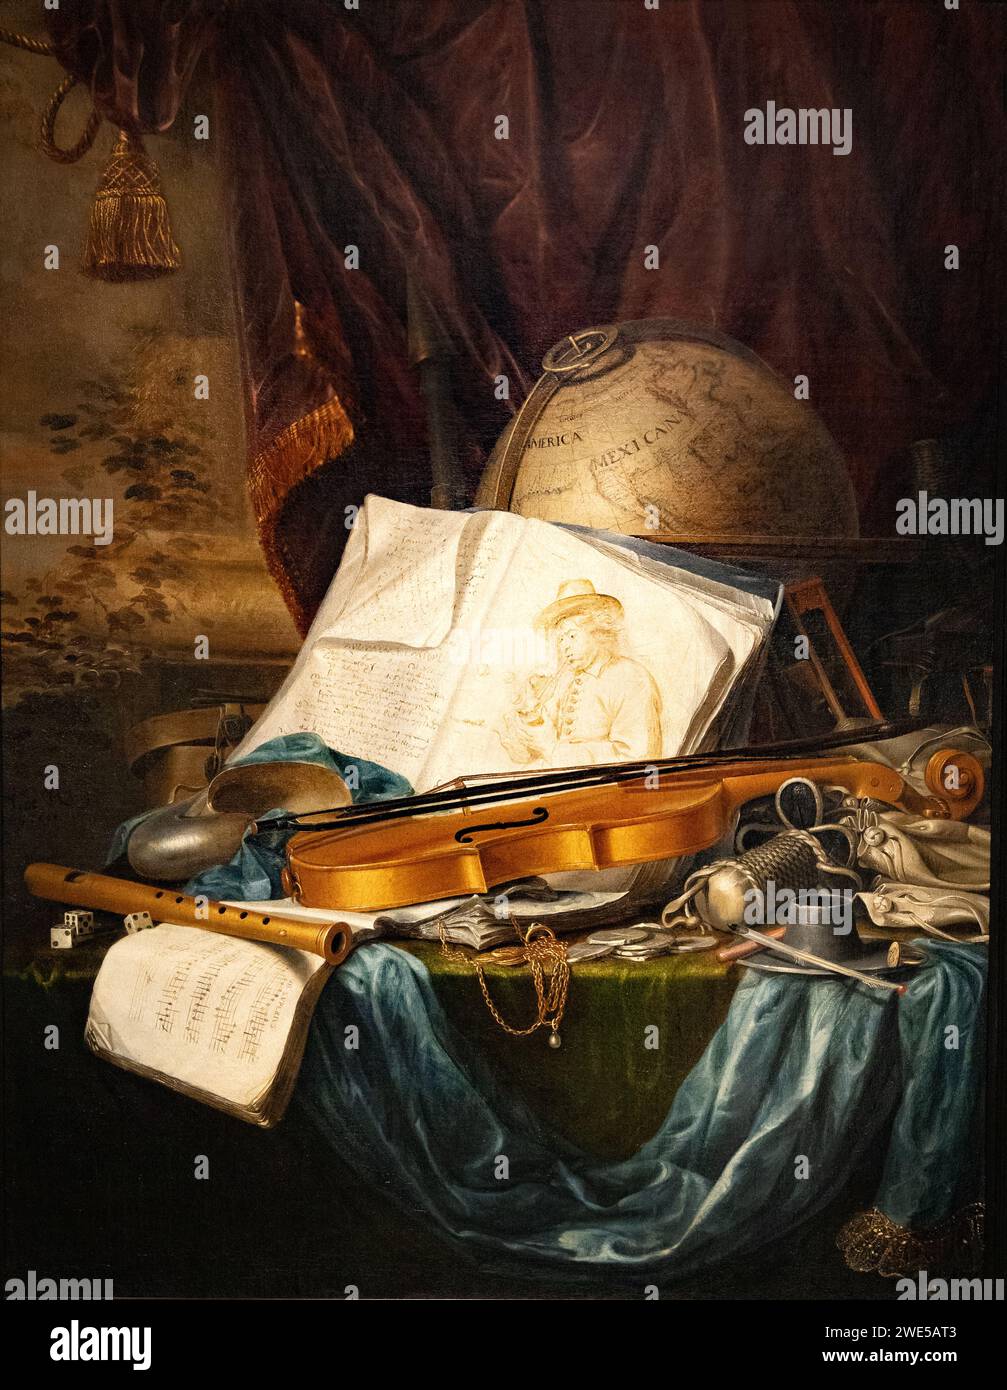 Pieter de Ring Painting, 'nature morte des instruments de musique', 1650, peintre néerlandais de l'âge d'or, dans le style baroque, peintures du XVIIe siècle. Banque D'Images